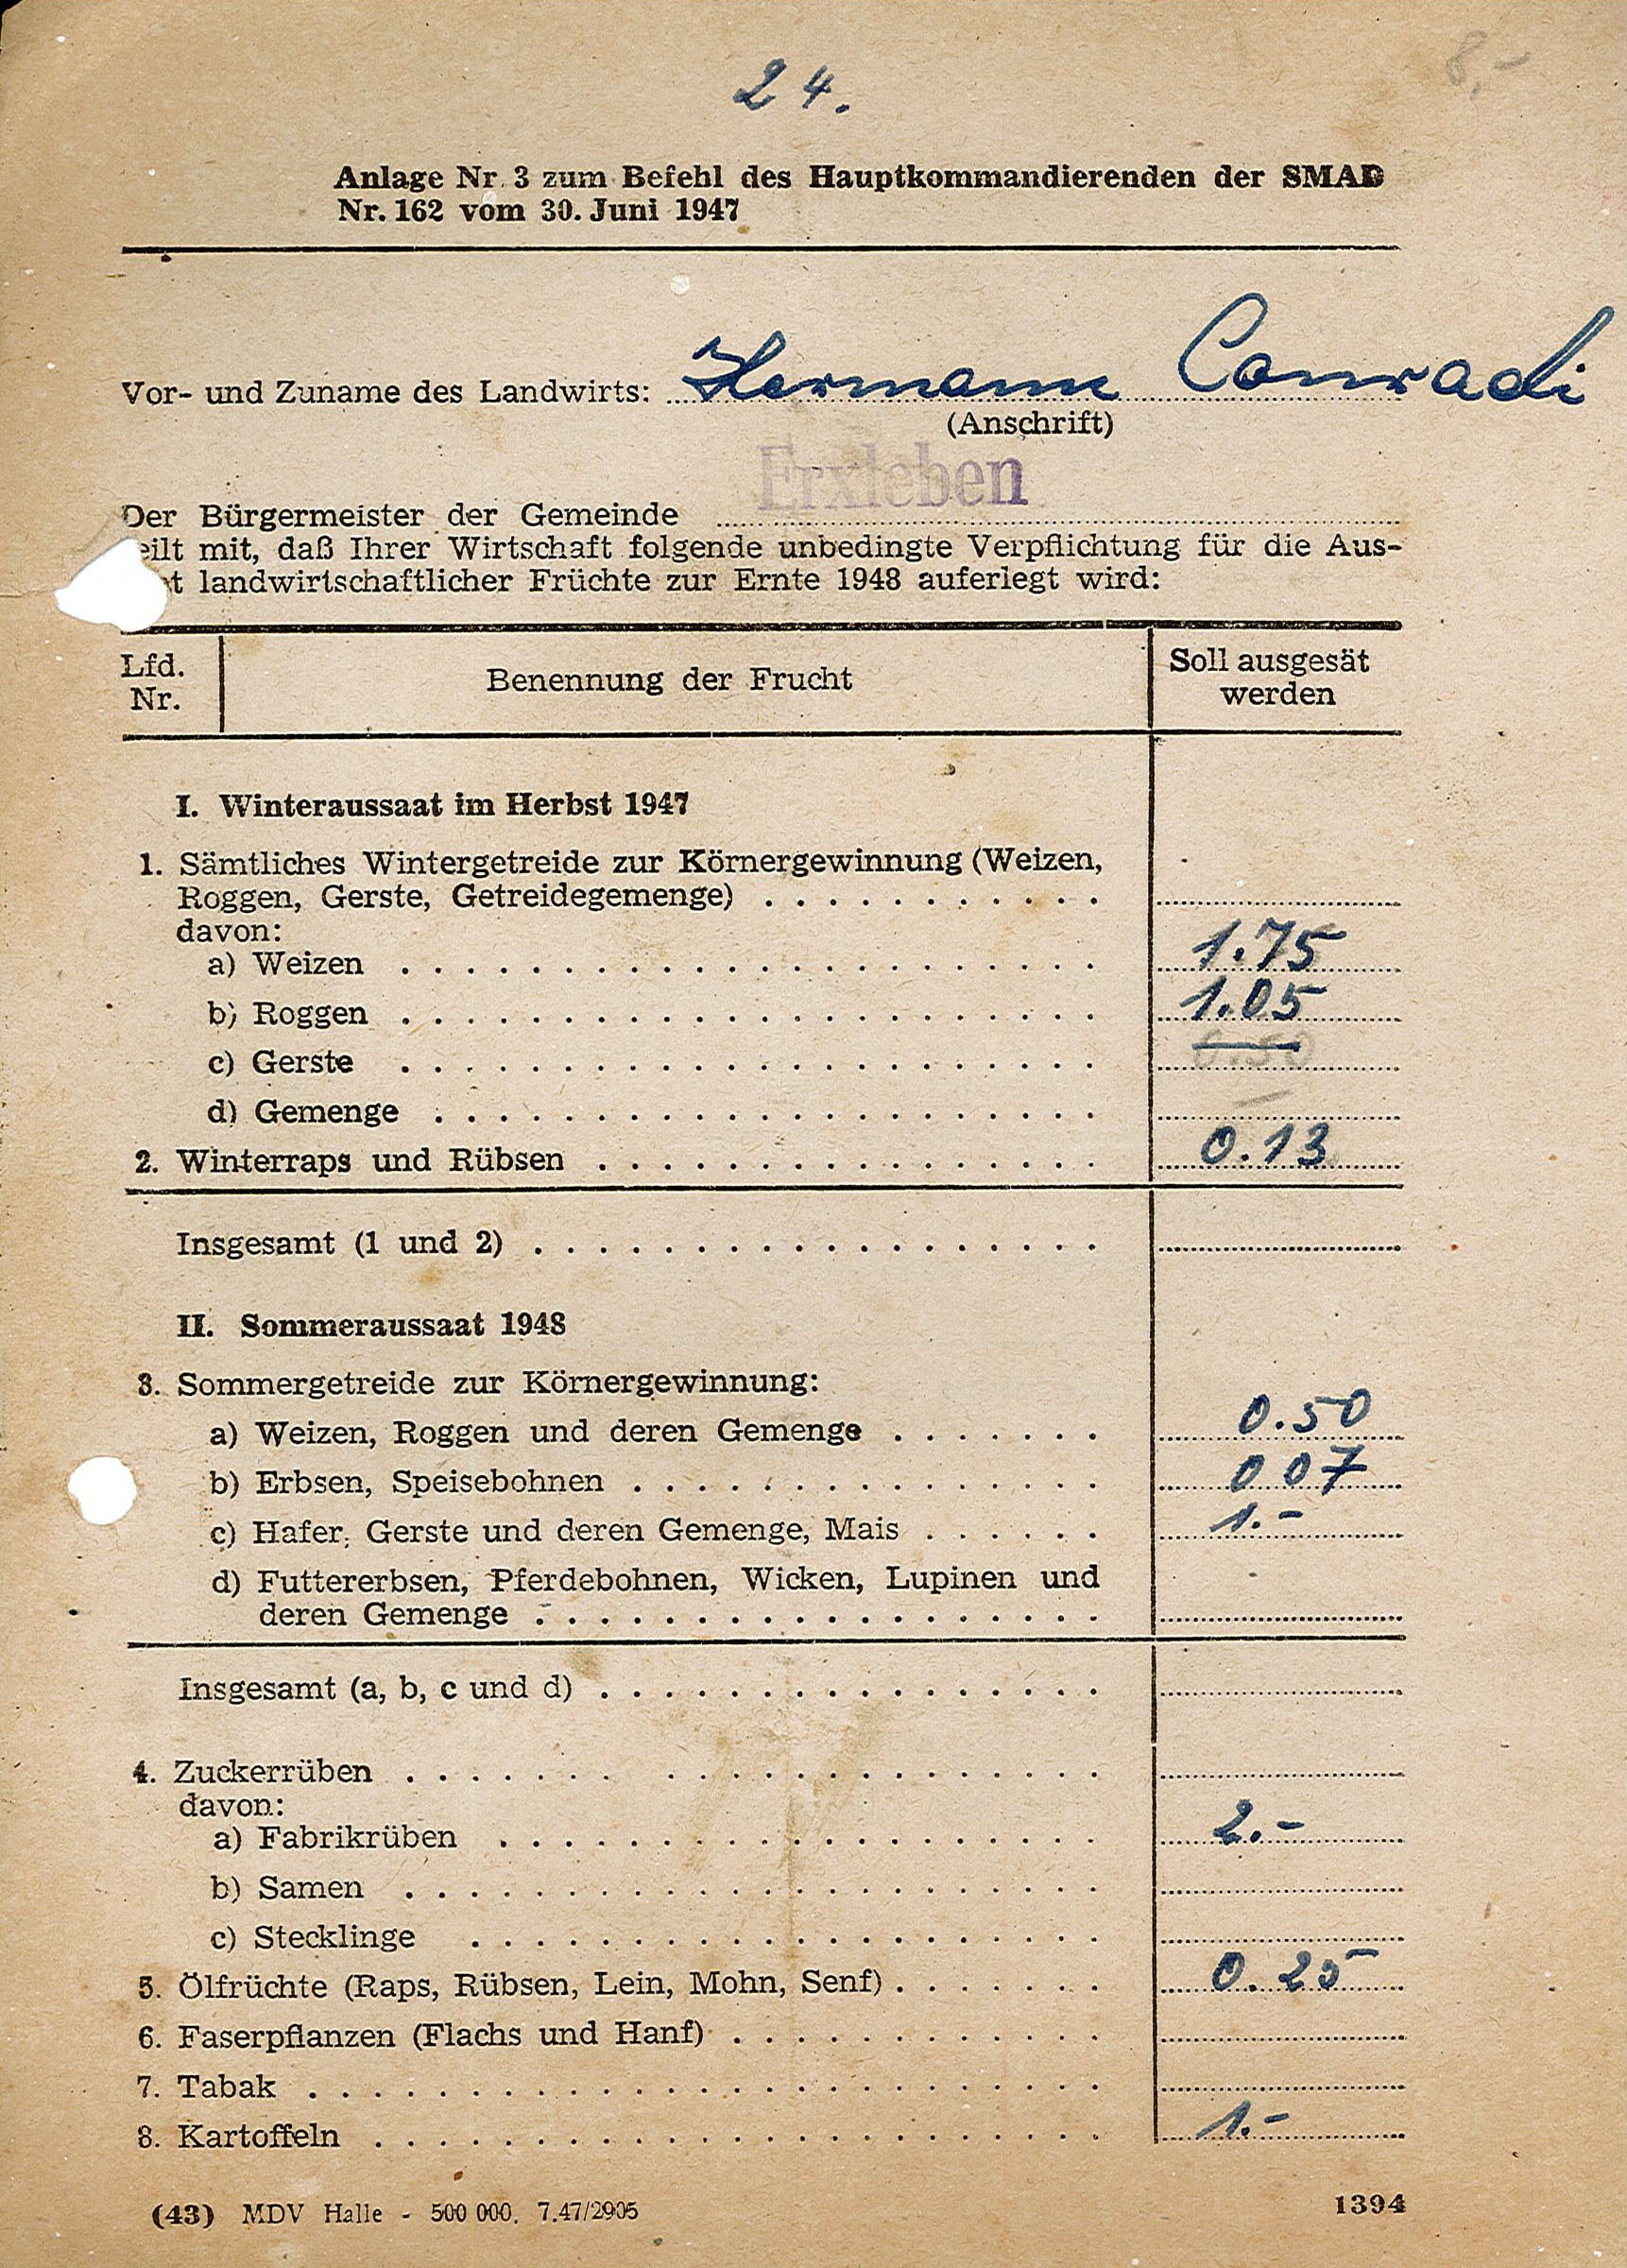 Anlage Nr. 3 zum SMAD-Befehl Nr. 162 - Anweisung an Hermann Conradi zu Art und Menge der Aussaat, 1947 (Museum Wolmirstedt RR-F)